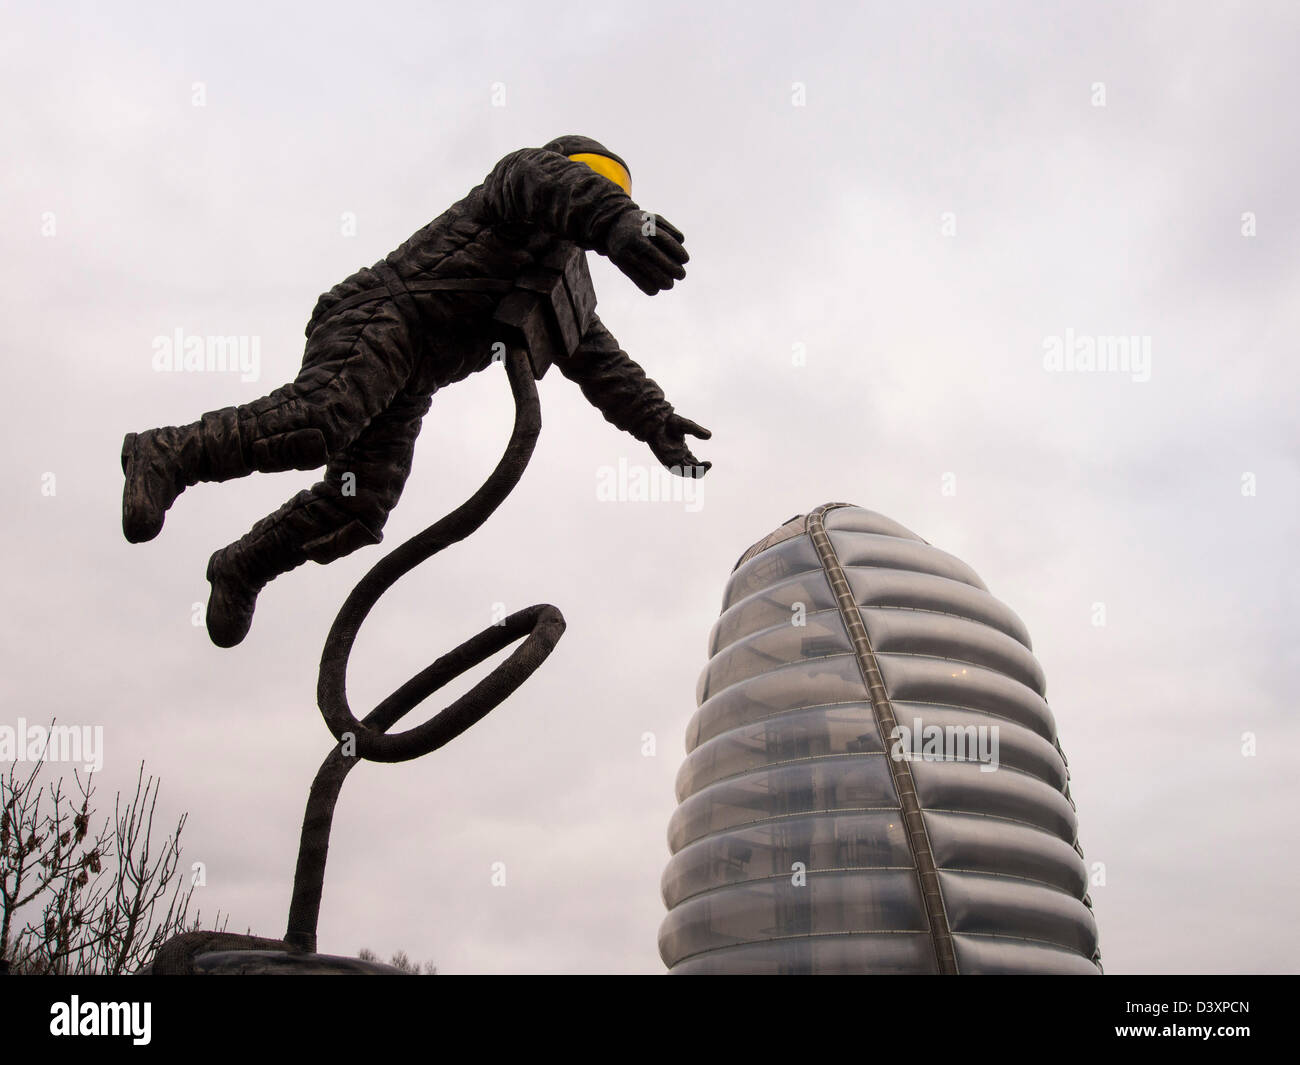 Ein Astronaut Bildhauerei an der National Space Centre in Leicester, UK. Stockfoto